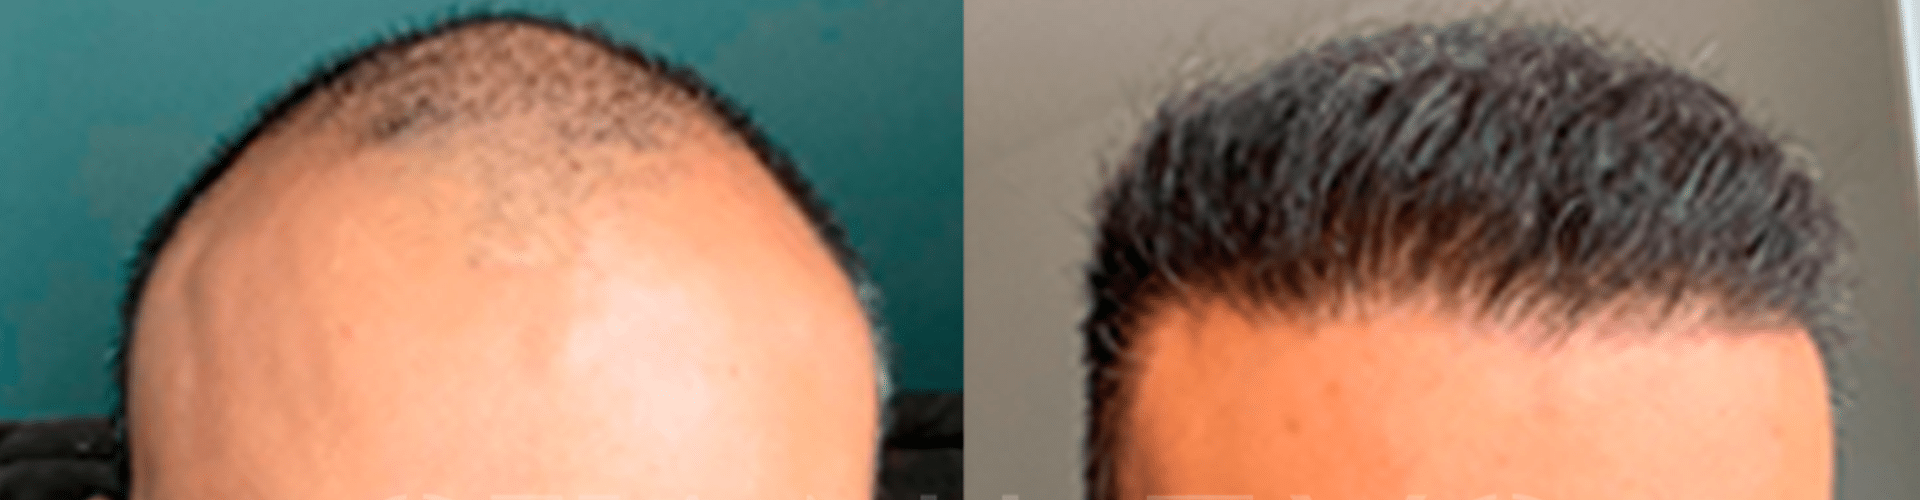 Transformação capilar: antes e depois do implante